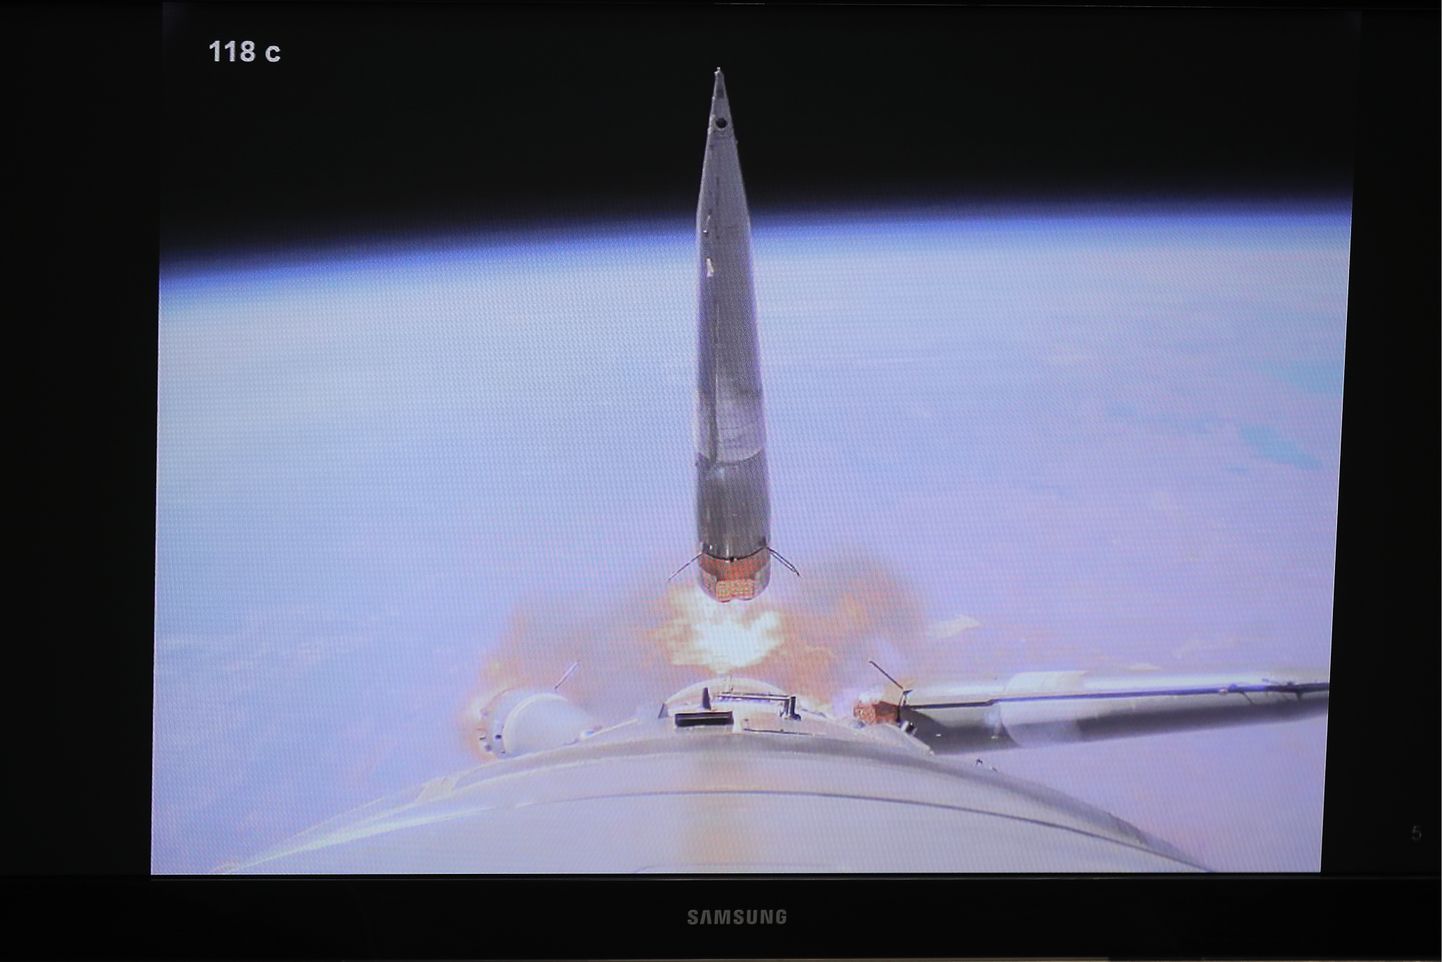 Raķetes "Sojuz" avārijas mirklis